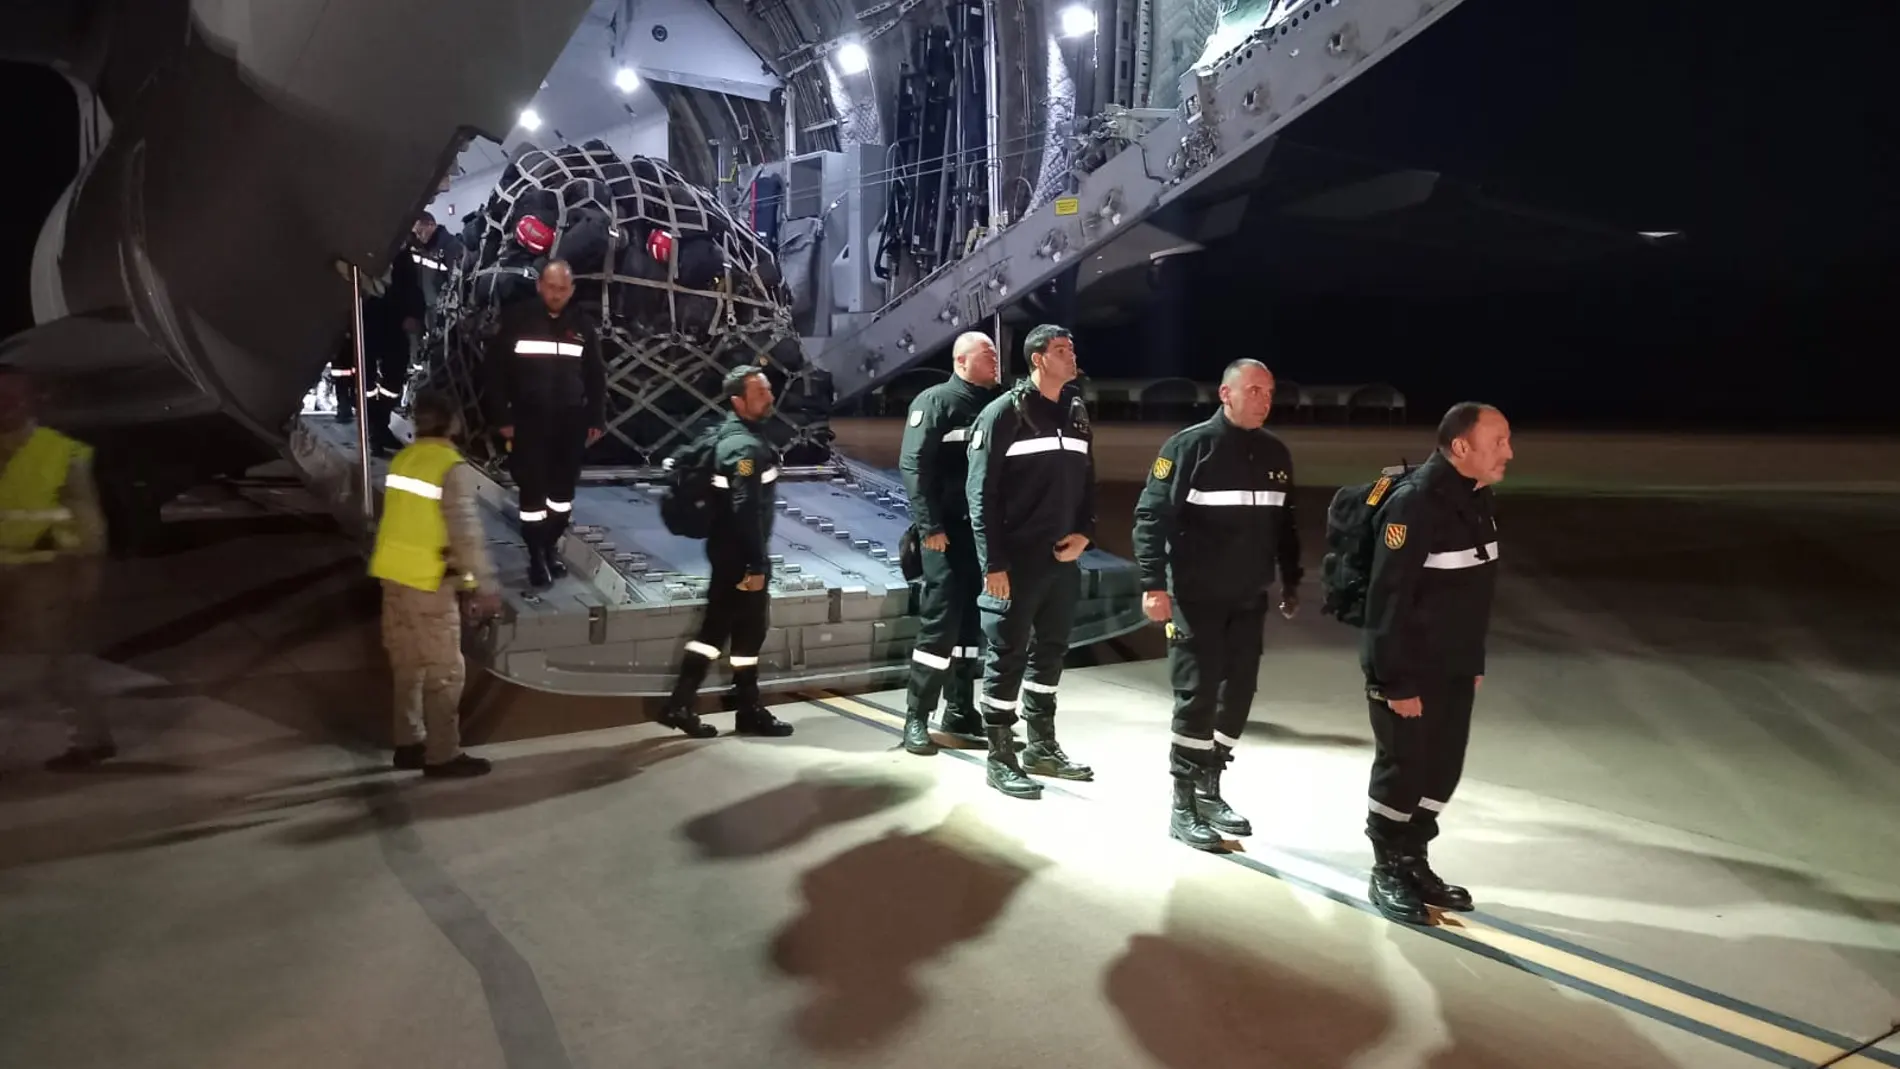 La UME aterriza en España con el equipo de búsqueda y rescate tras su misión en Turquía